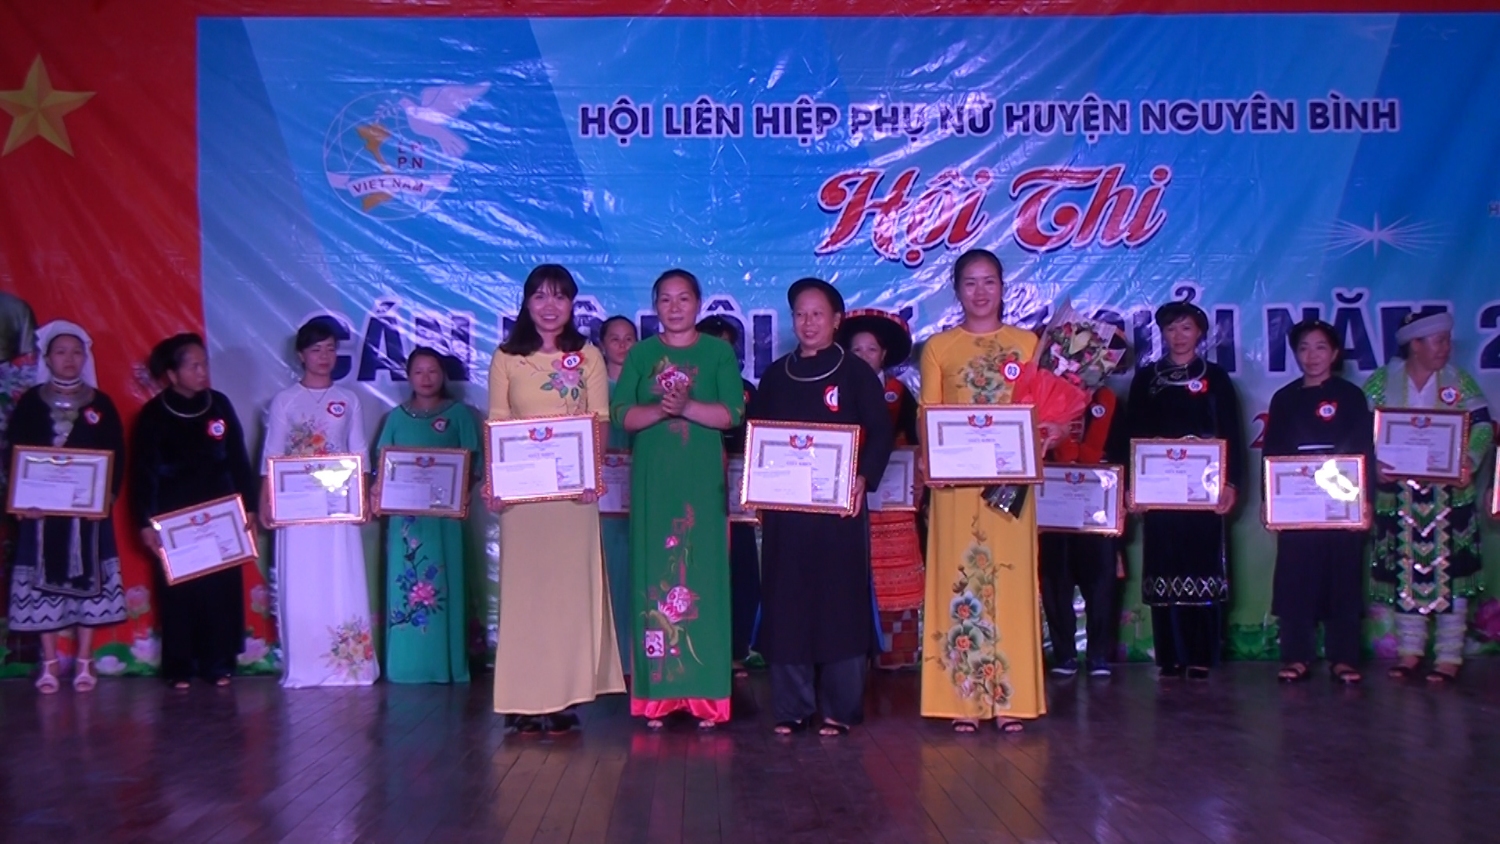 Hội LHPN huyện Nguyên Bình tổ chức Hội thi "Cán bộ Hội cơ sở giỏi" năm 2018